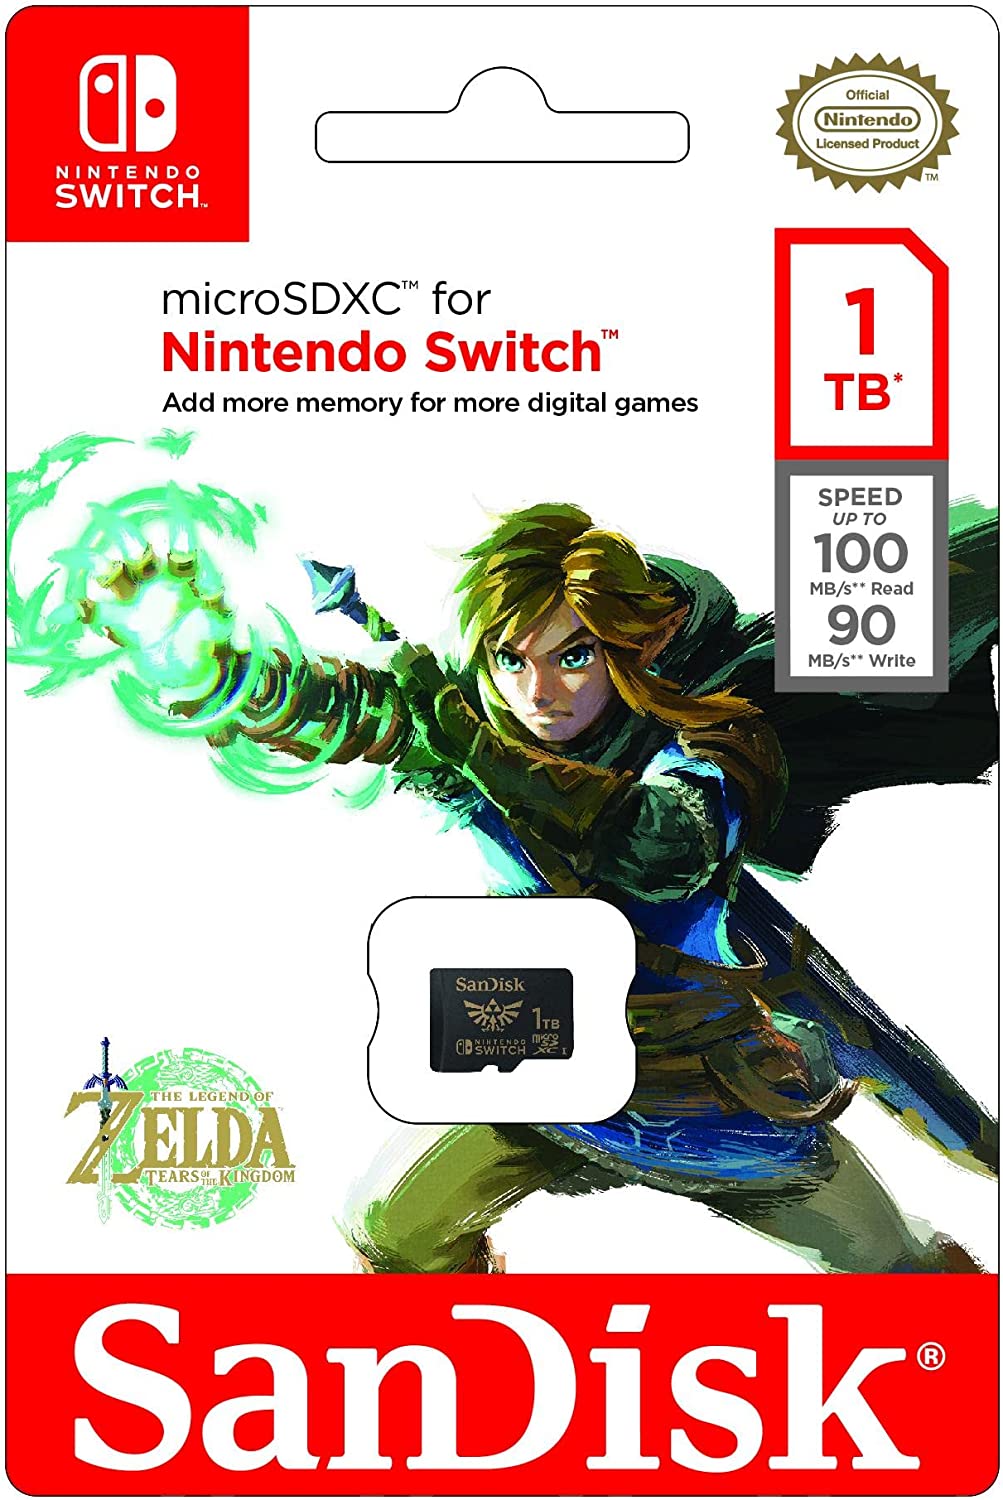 Prime Day : La carte MicroSD au thème de Zelda vous offre 1To et baisse de  14% 